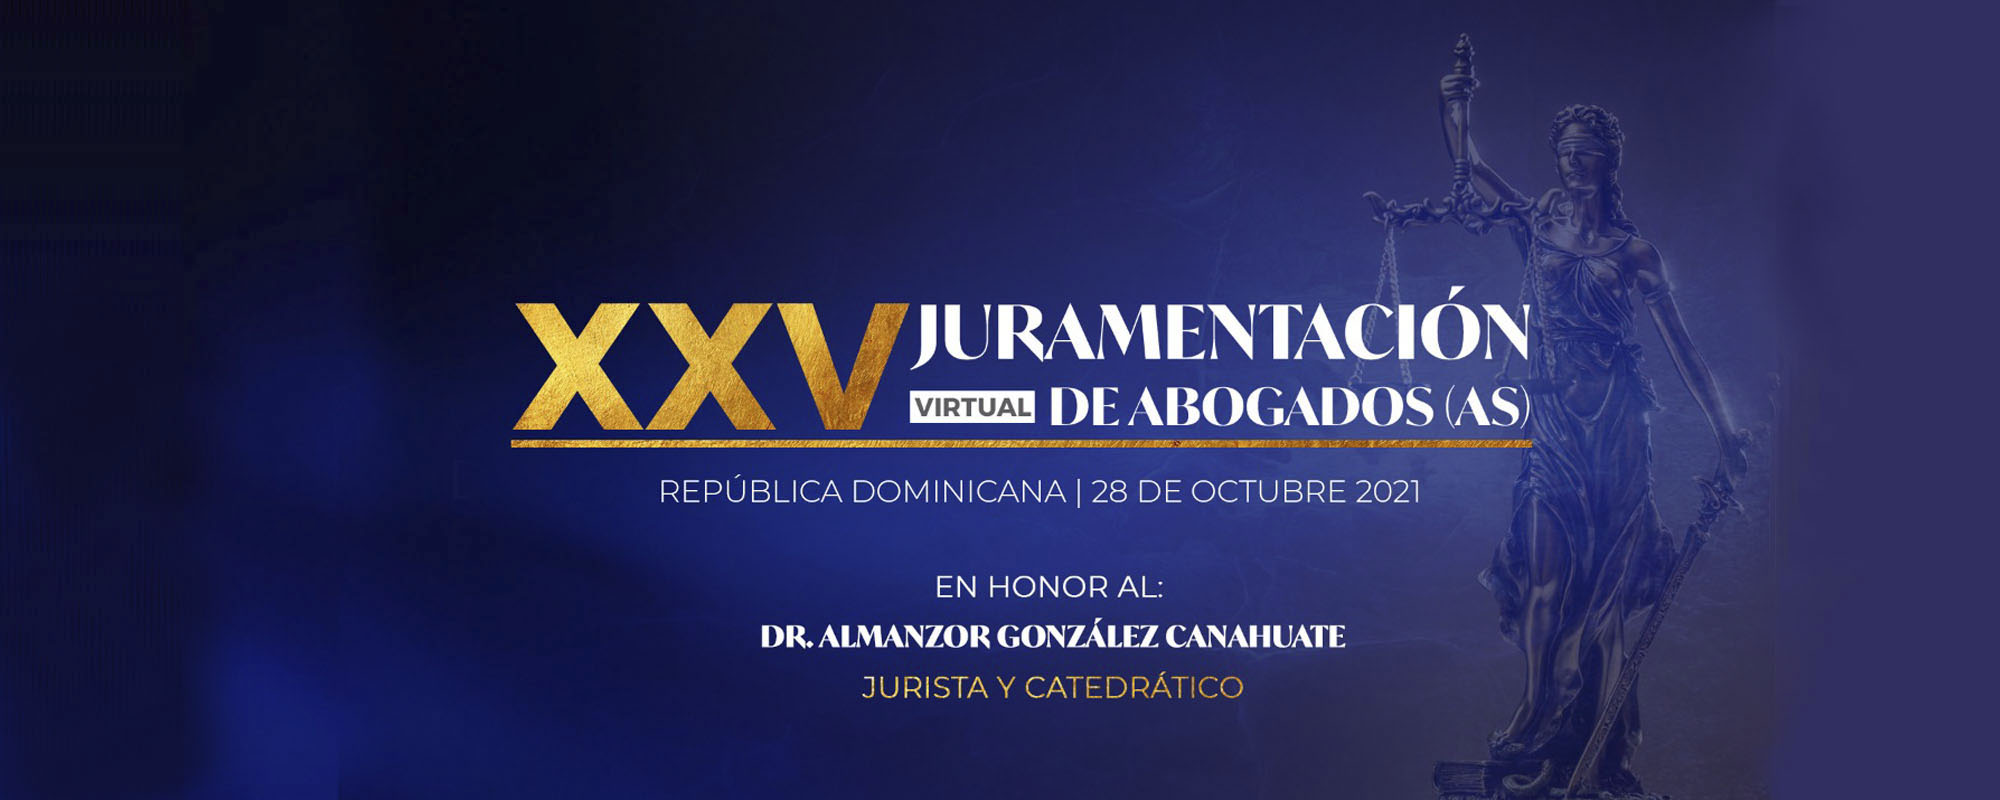 xxv-almanzor-gonzalez-canahuate